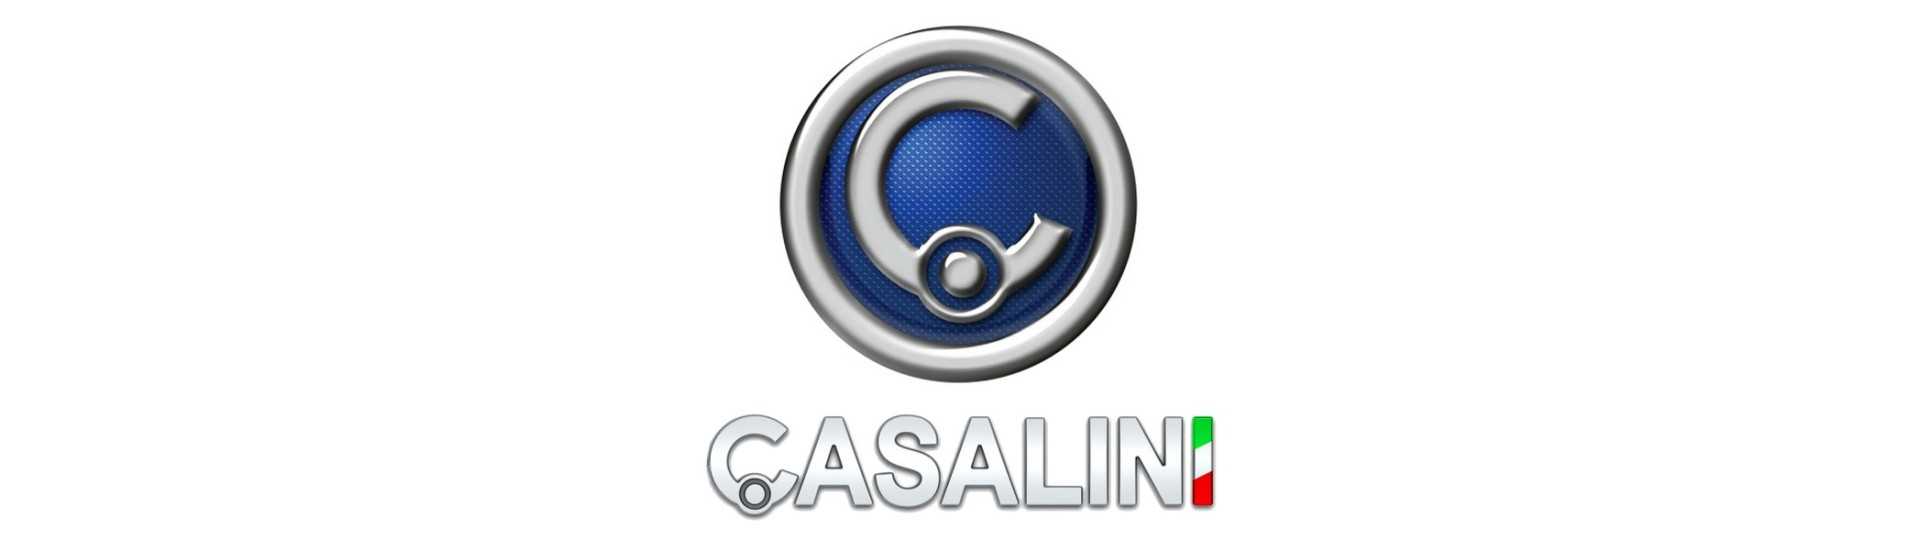 Joint de porte au meilleur prix pour voiture sans permis Casalini